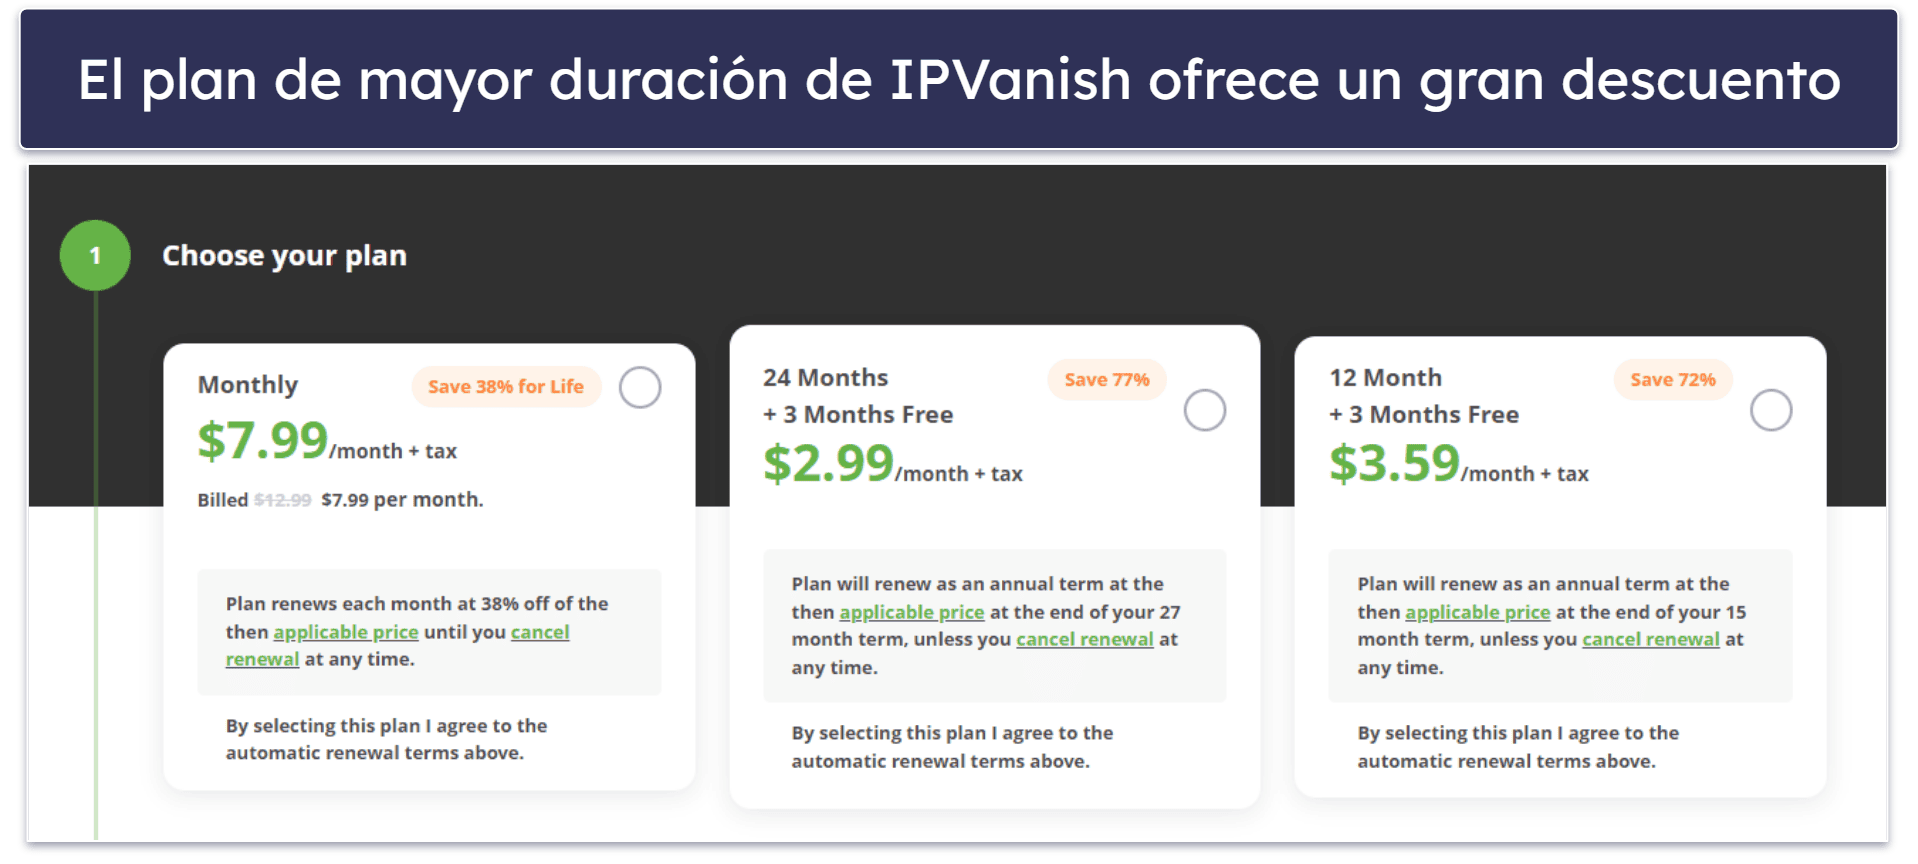 Planes y precios de IPVanish